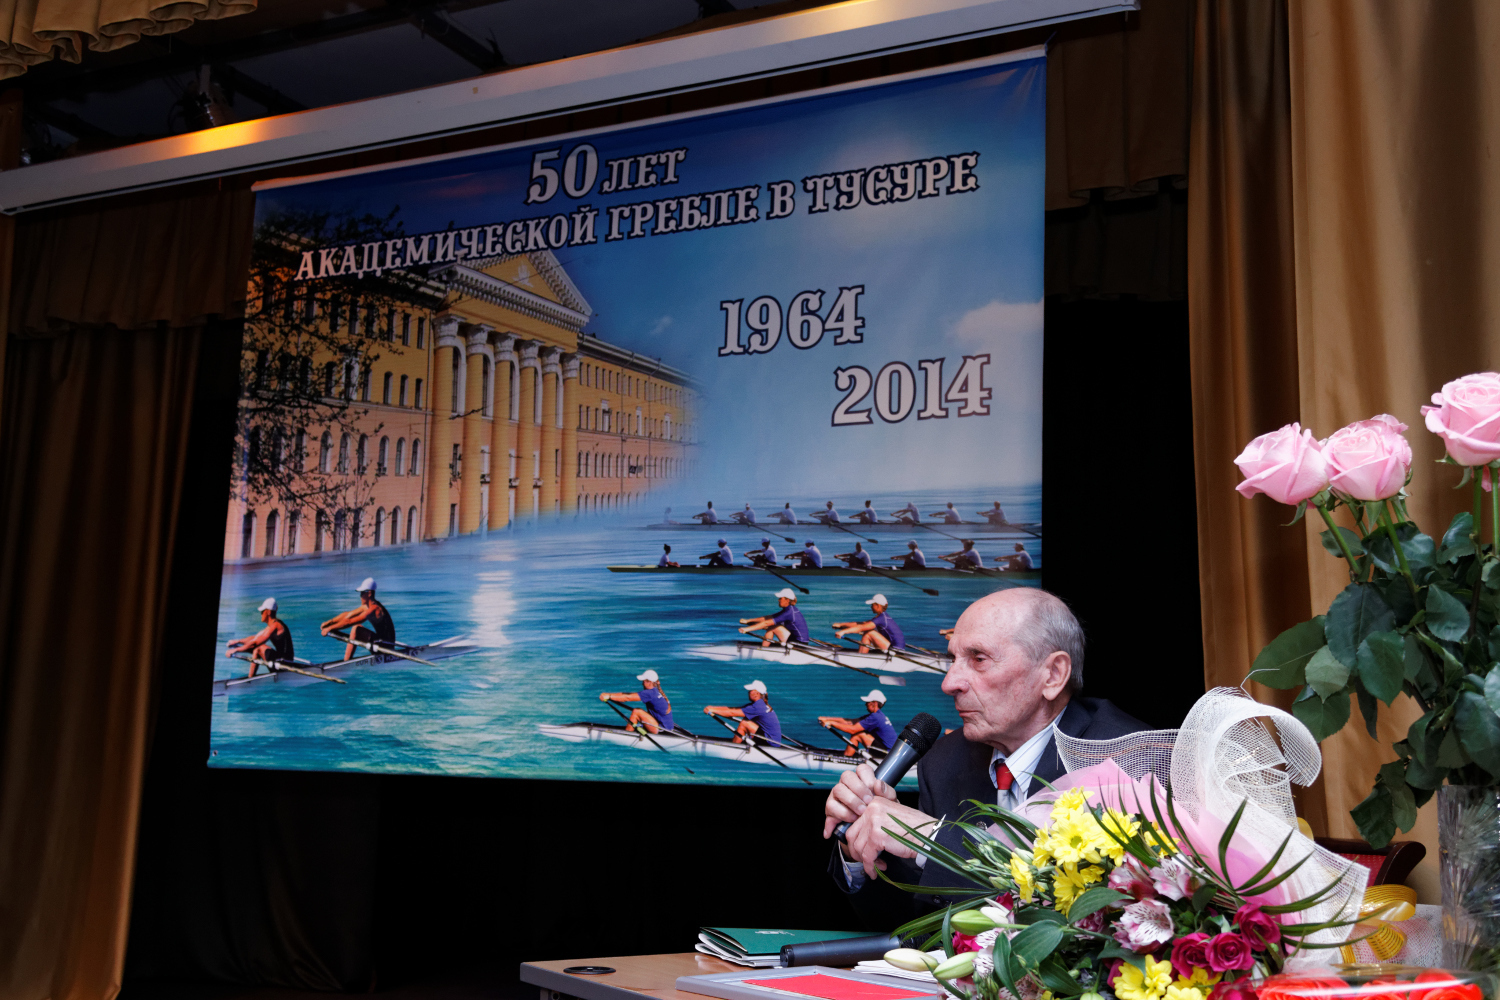 6 июня 2014 года в Доме Ученых состоялось юбилейное торжество в честь 50 летия академической гребли в ТУСУРе